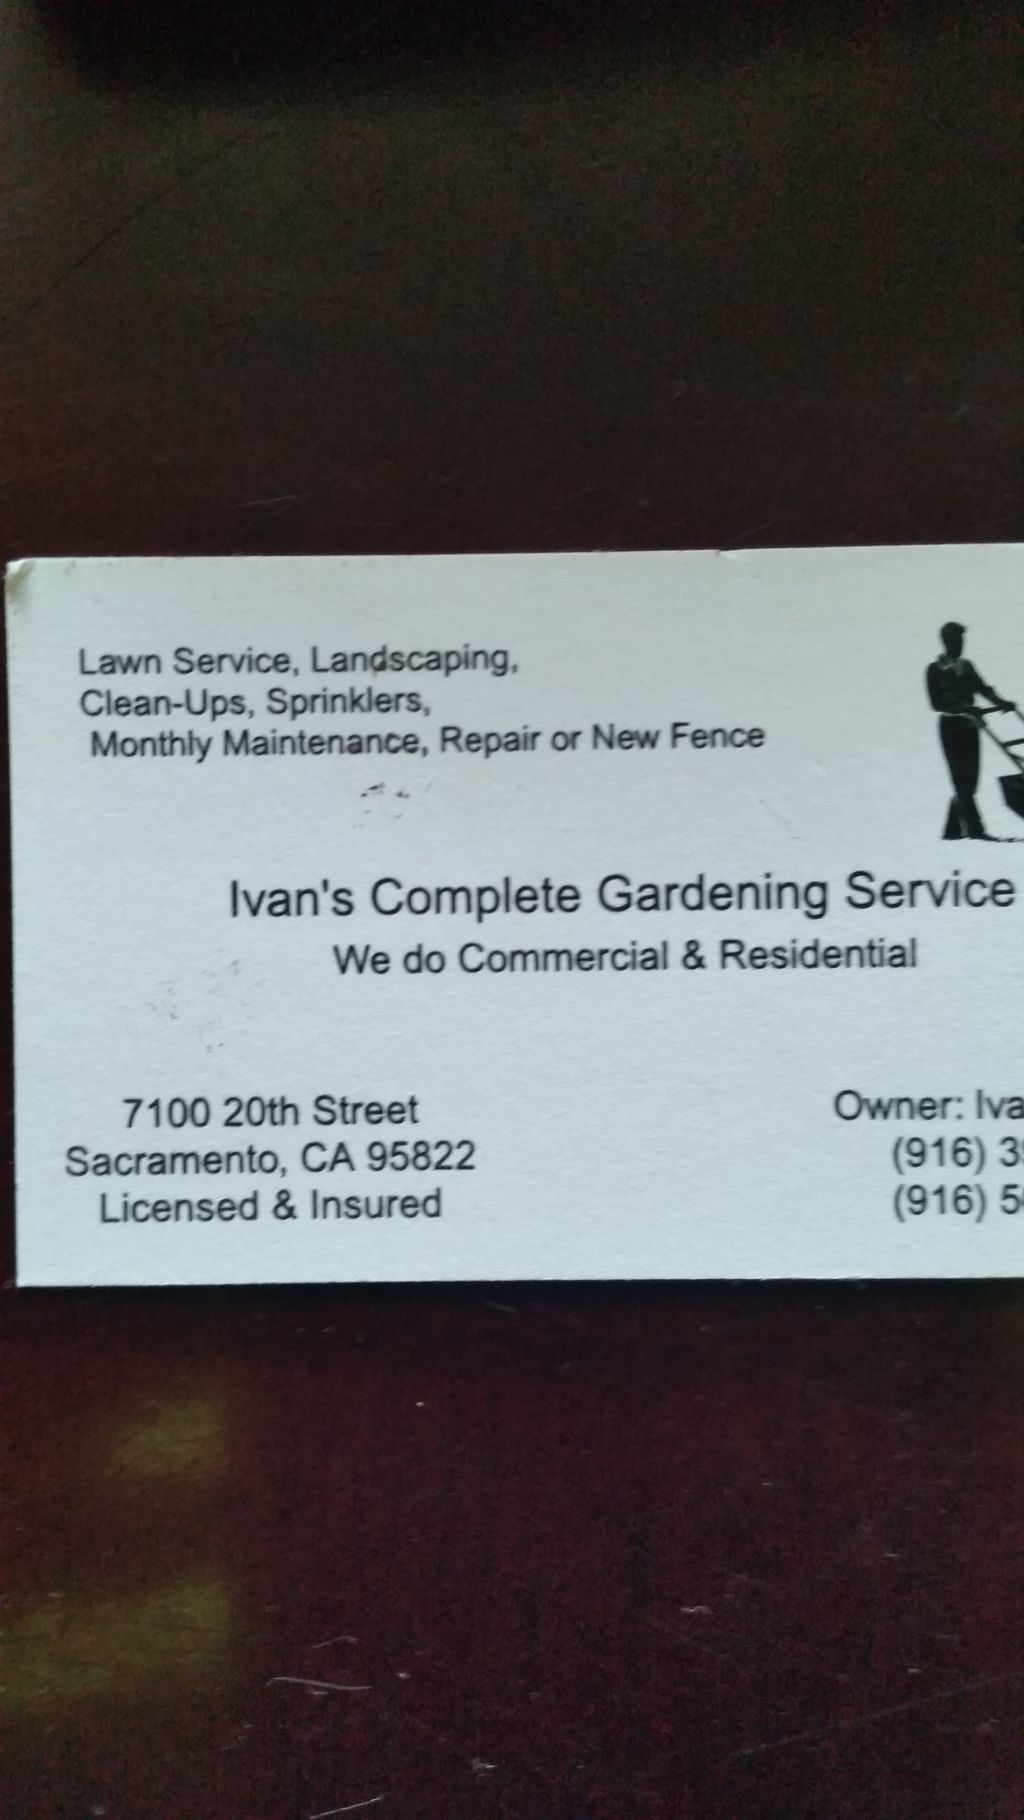 Ivan's Complete Gardening Service